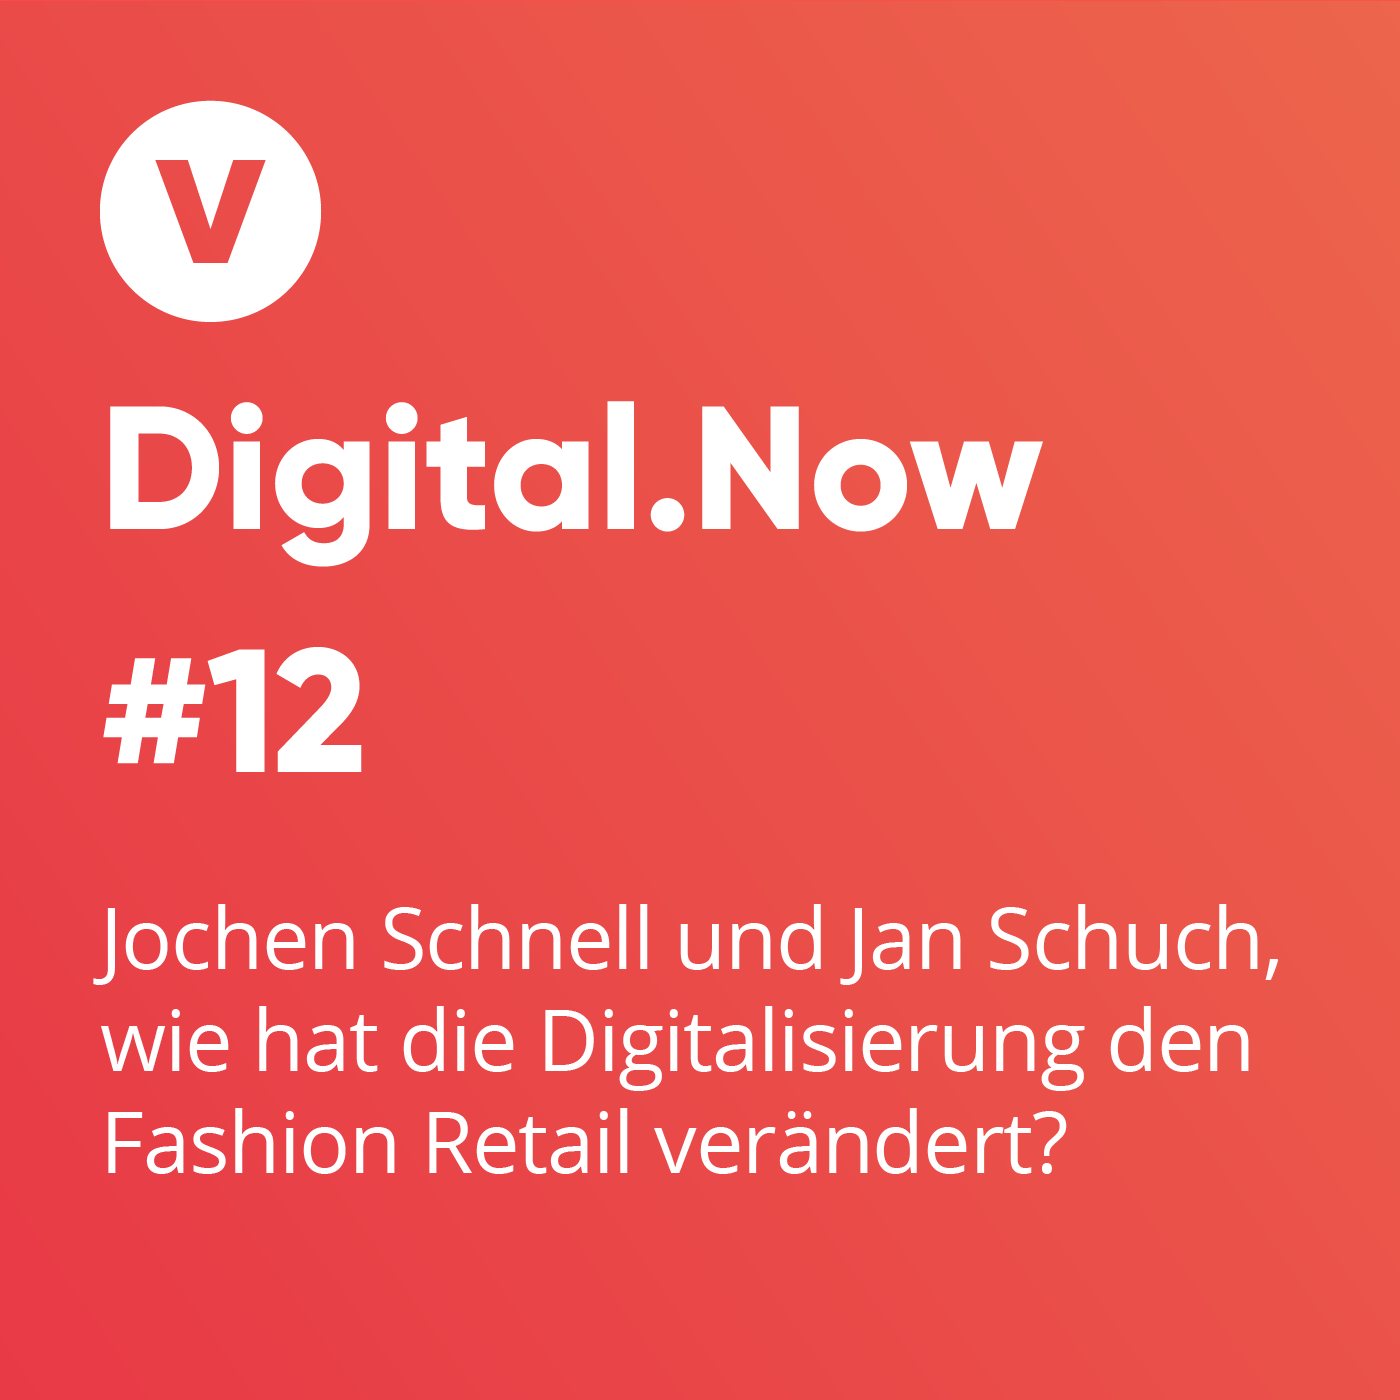 Jochen Schnell und Jan Schuch, wie hat die Digitalisierung den Fashion Retail verändert?